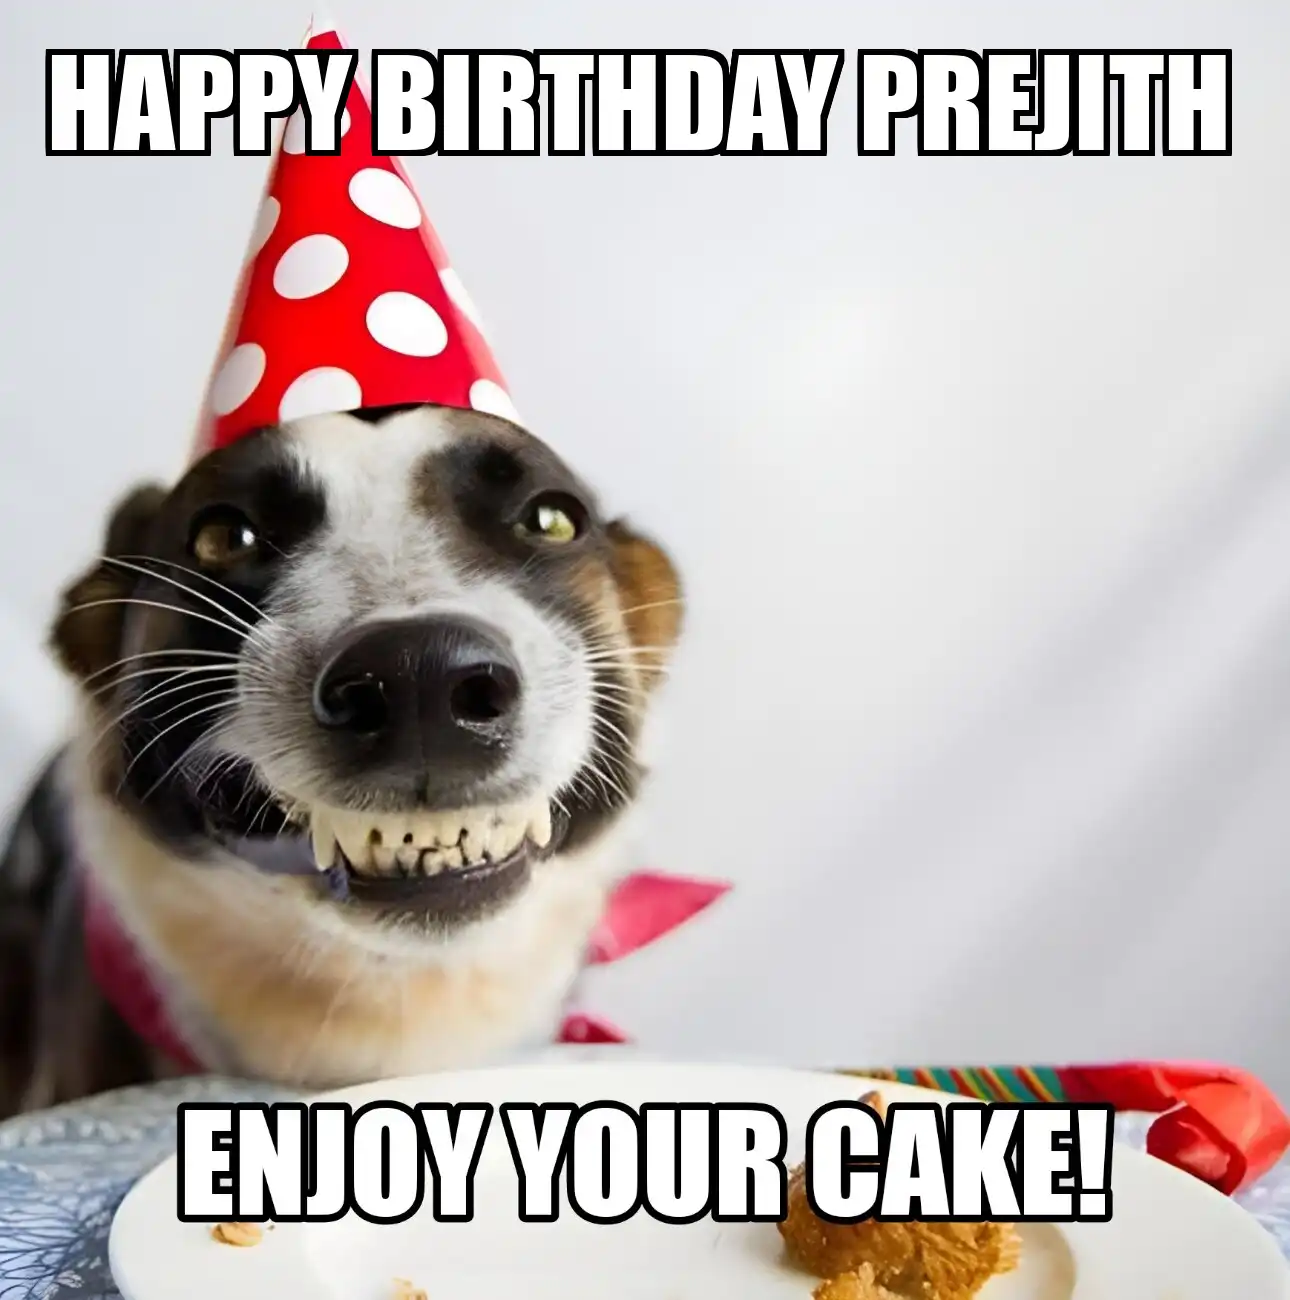 Happy Birthday Prejith Enjoy Your Cake Dog Meme